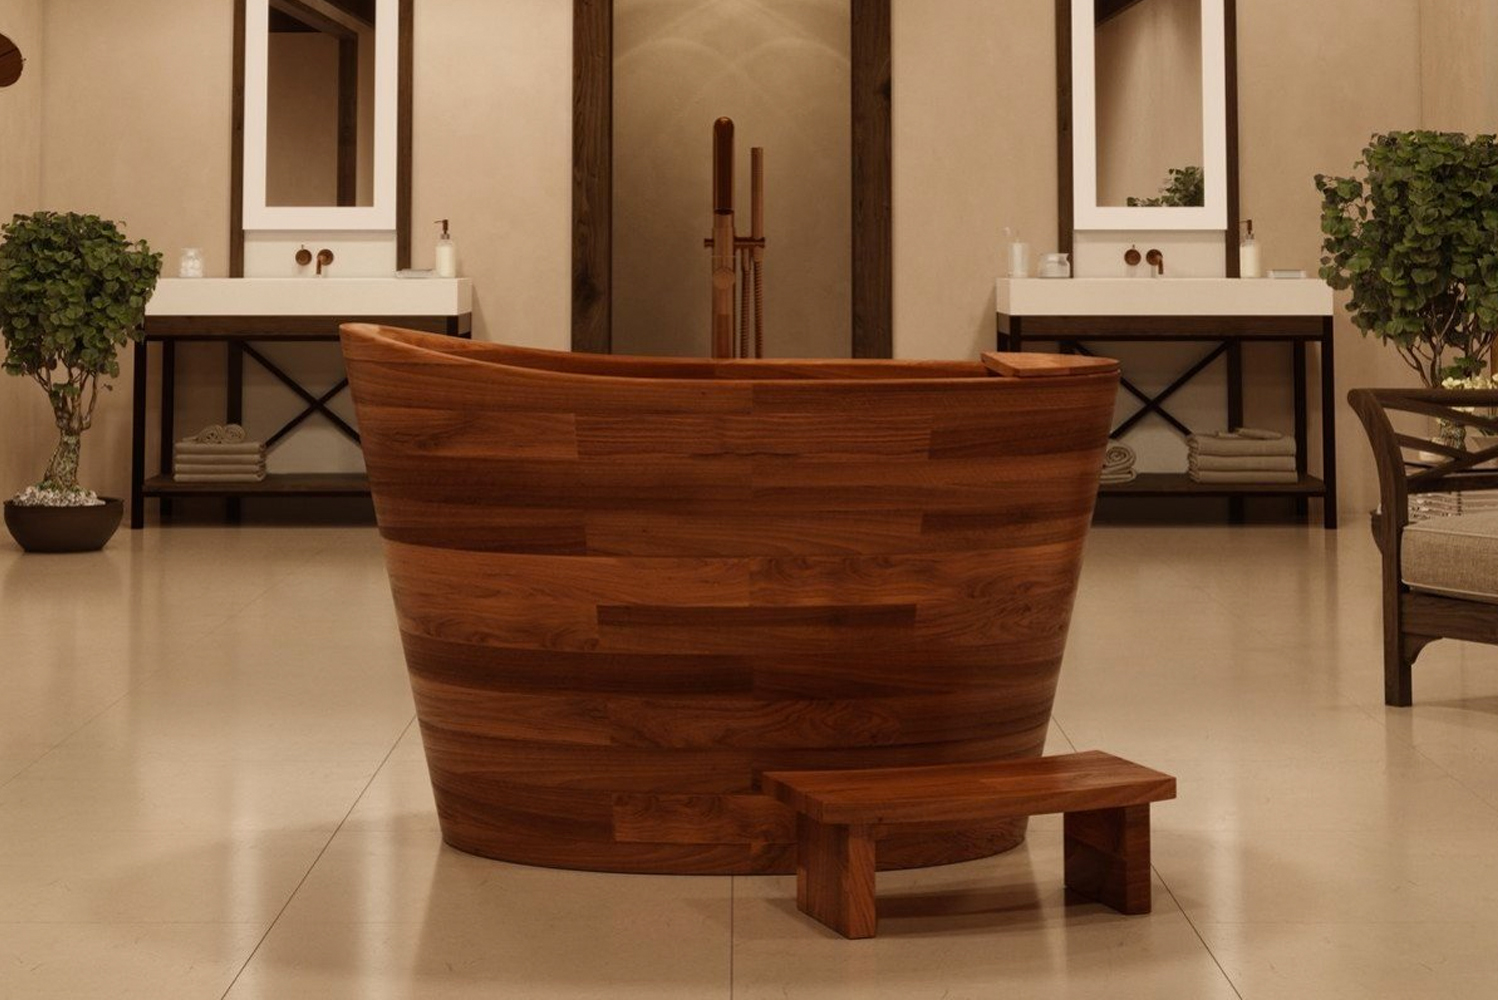 Aquatica launched the True Ofuro Japanese seated soaking tub 